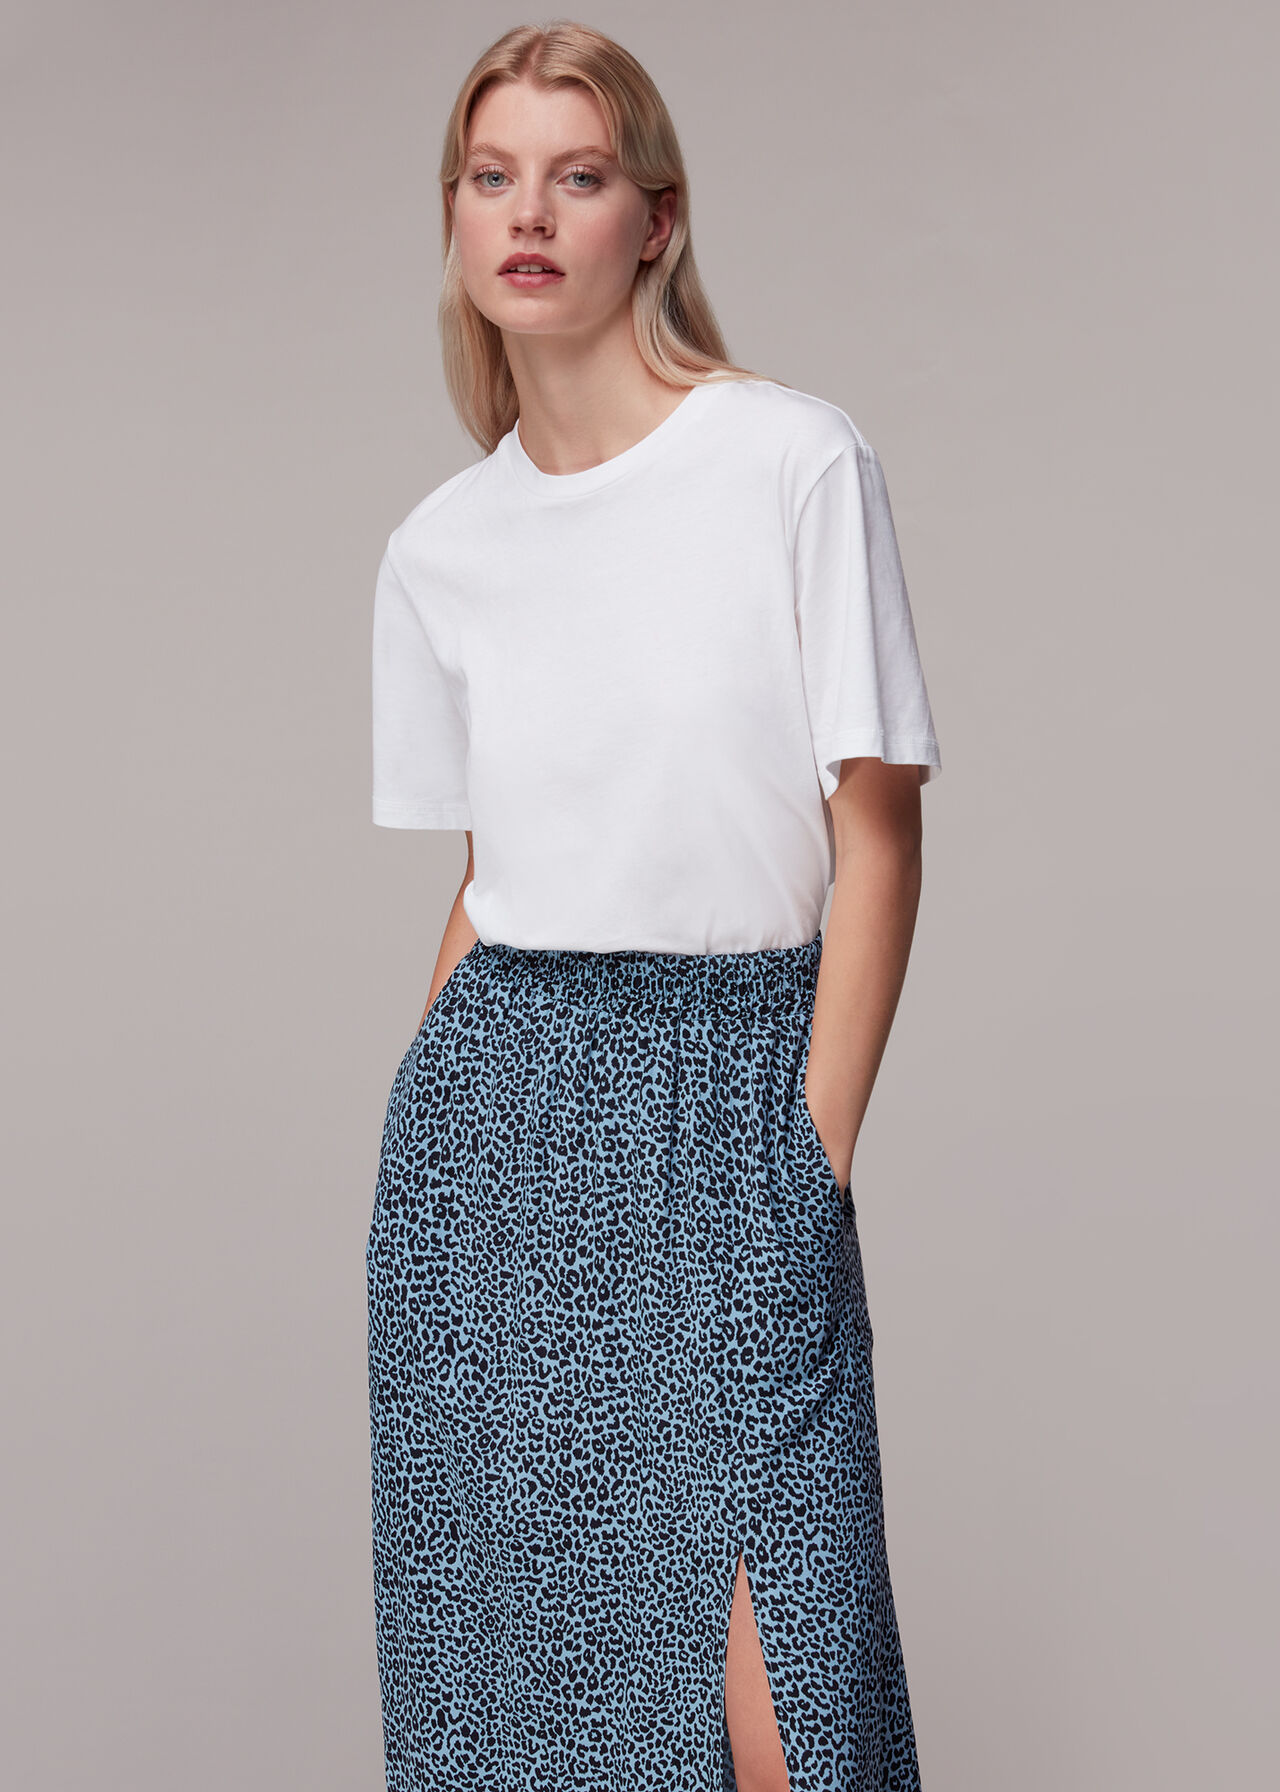 Contrast Leopard Skirt